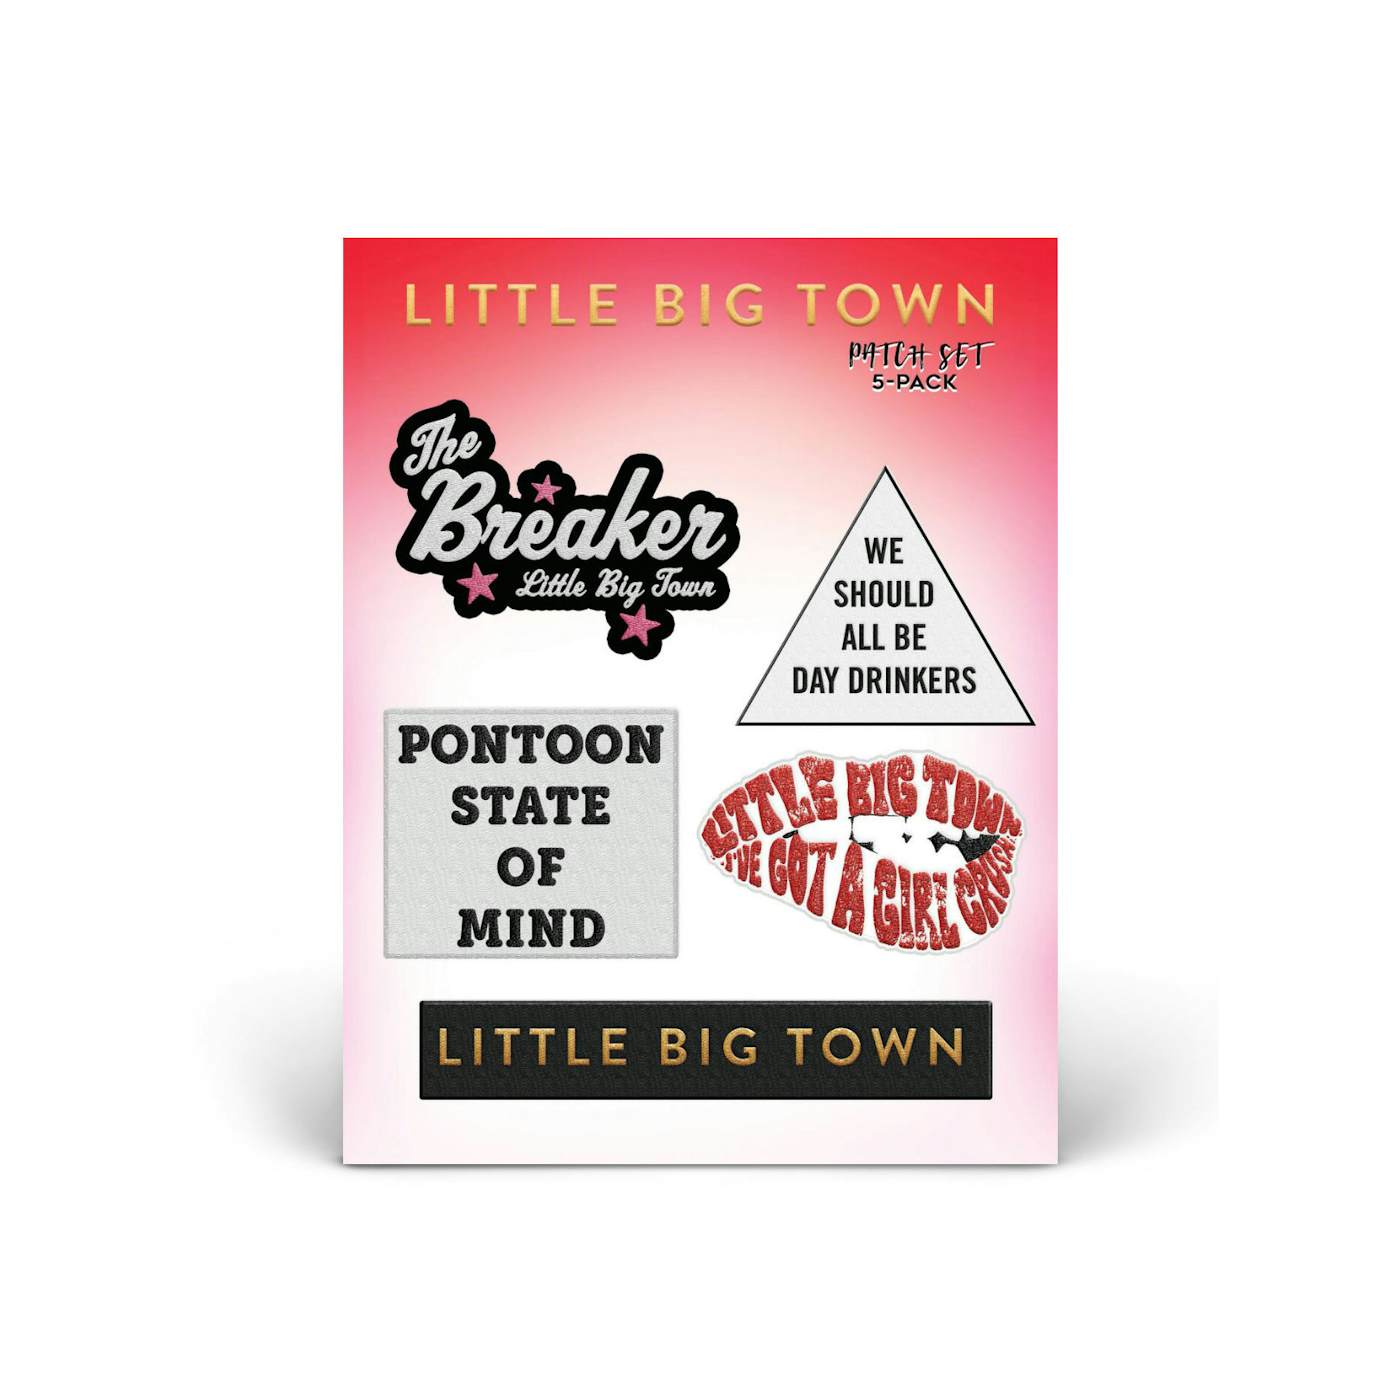 Little Big Town The Breaker Tour Patch Set